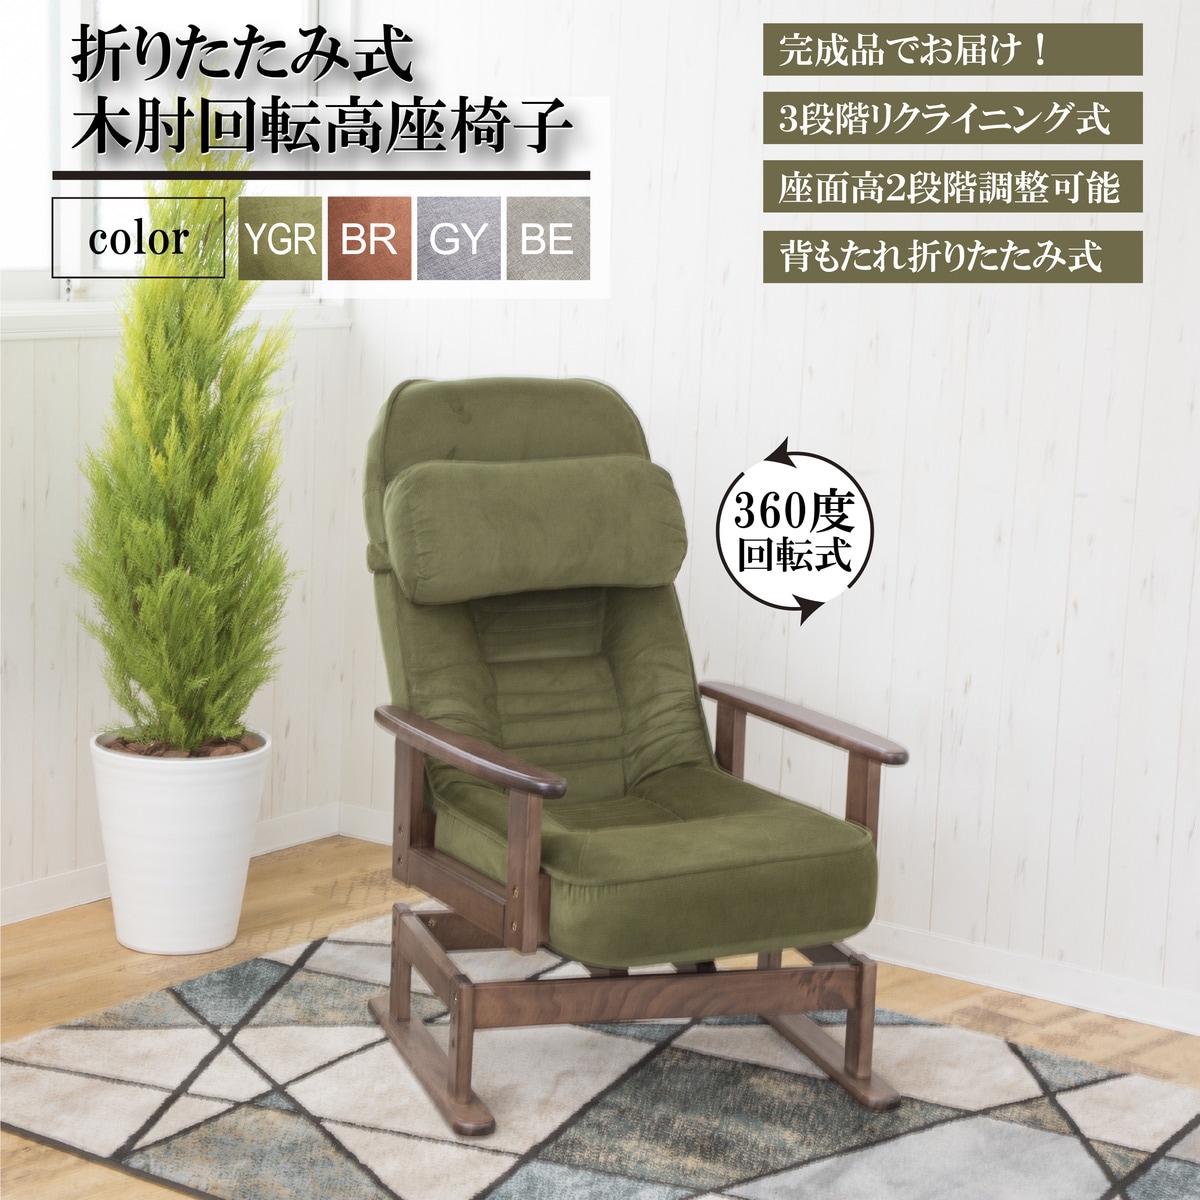 折りたたみサポートチェア(SV01 YGR)通販 ニトリネット【公式】 家具・インテリア通販